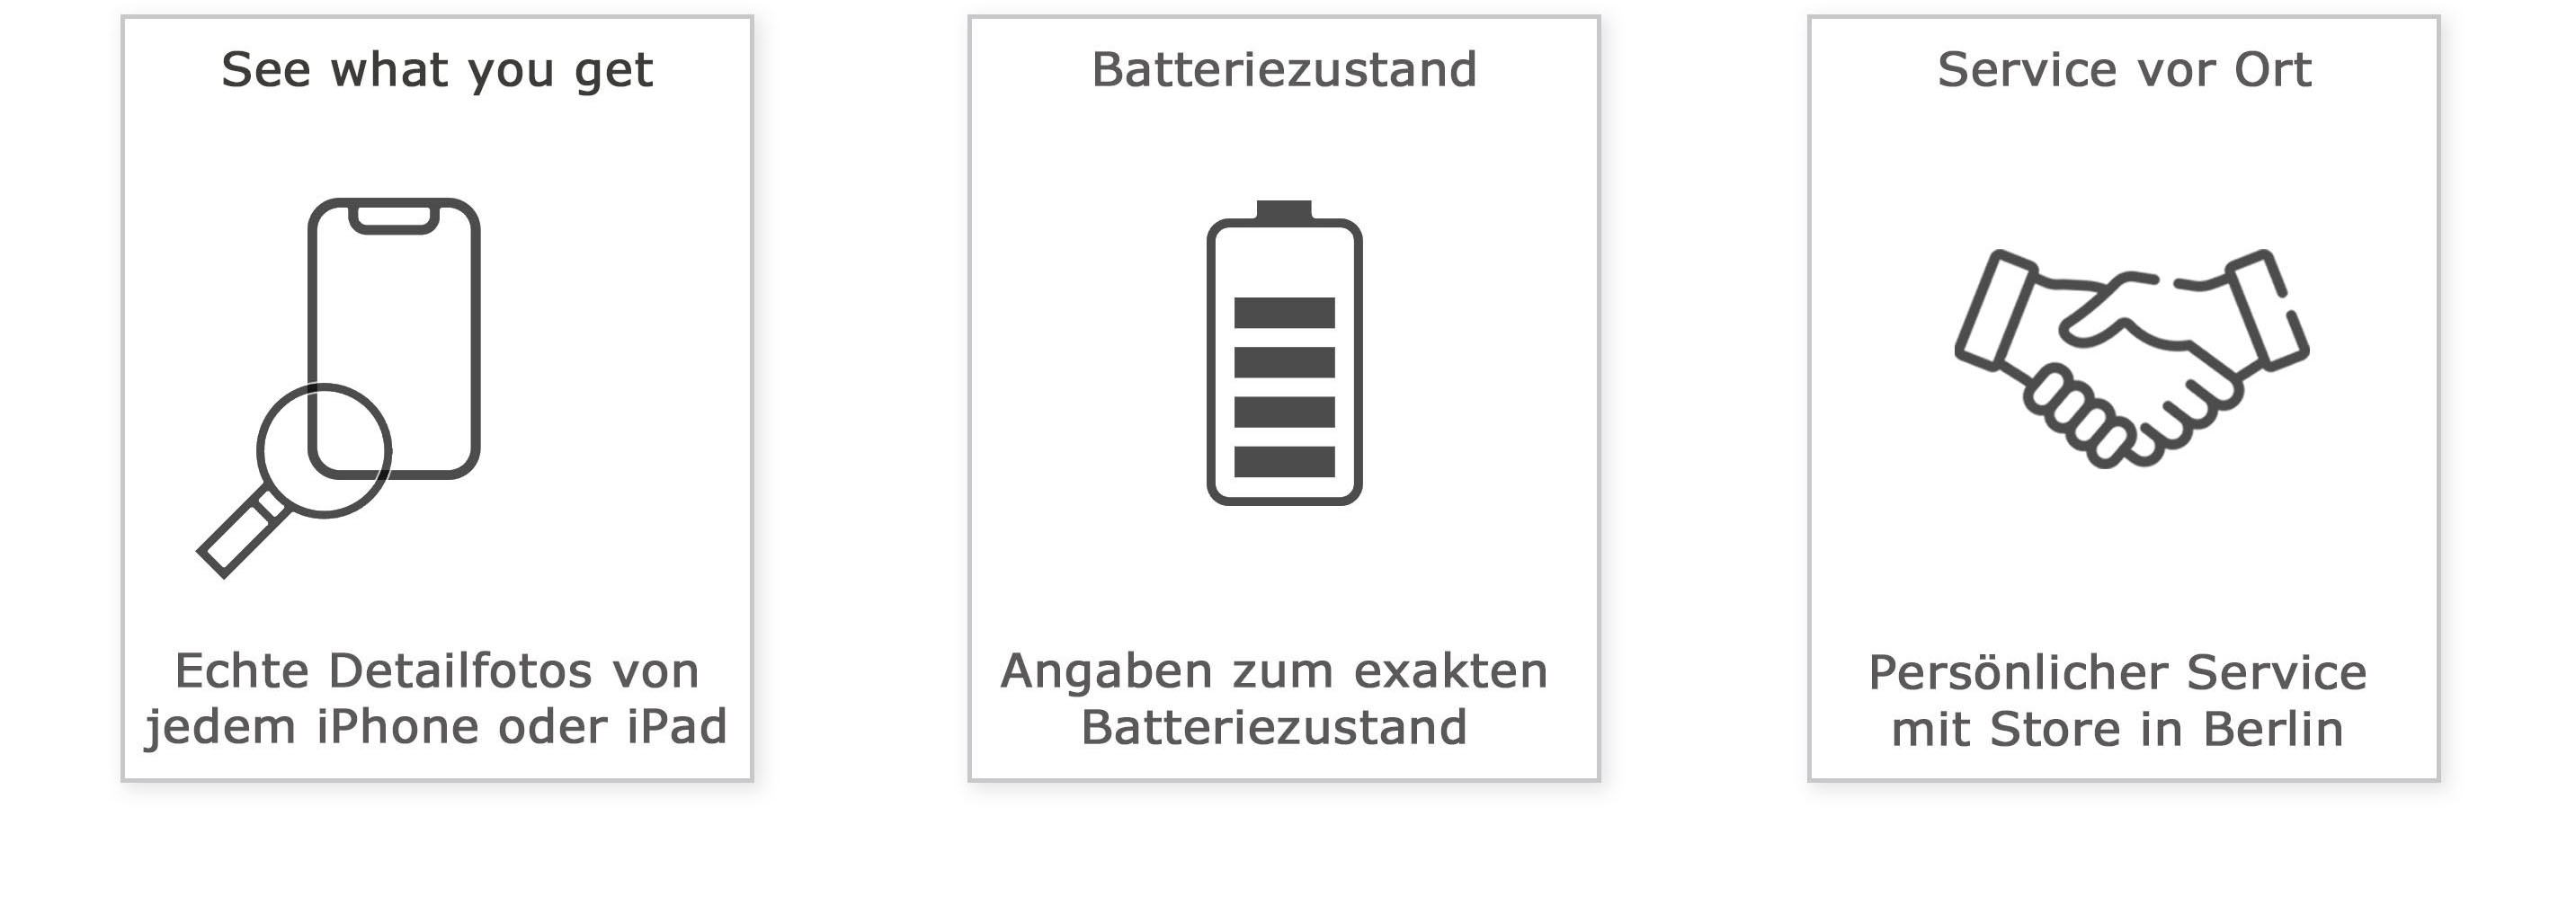 Echte Detailfotos inkl. Angaben zum Batteriezustand, Service vor Ort